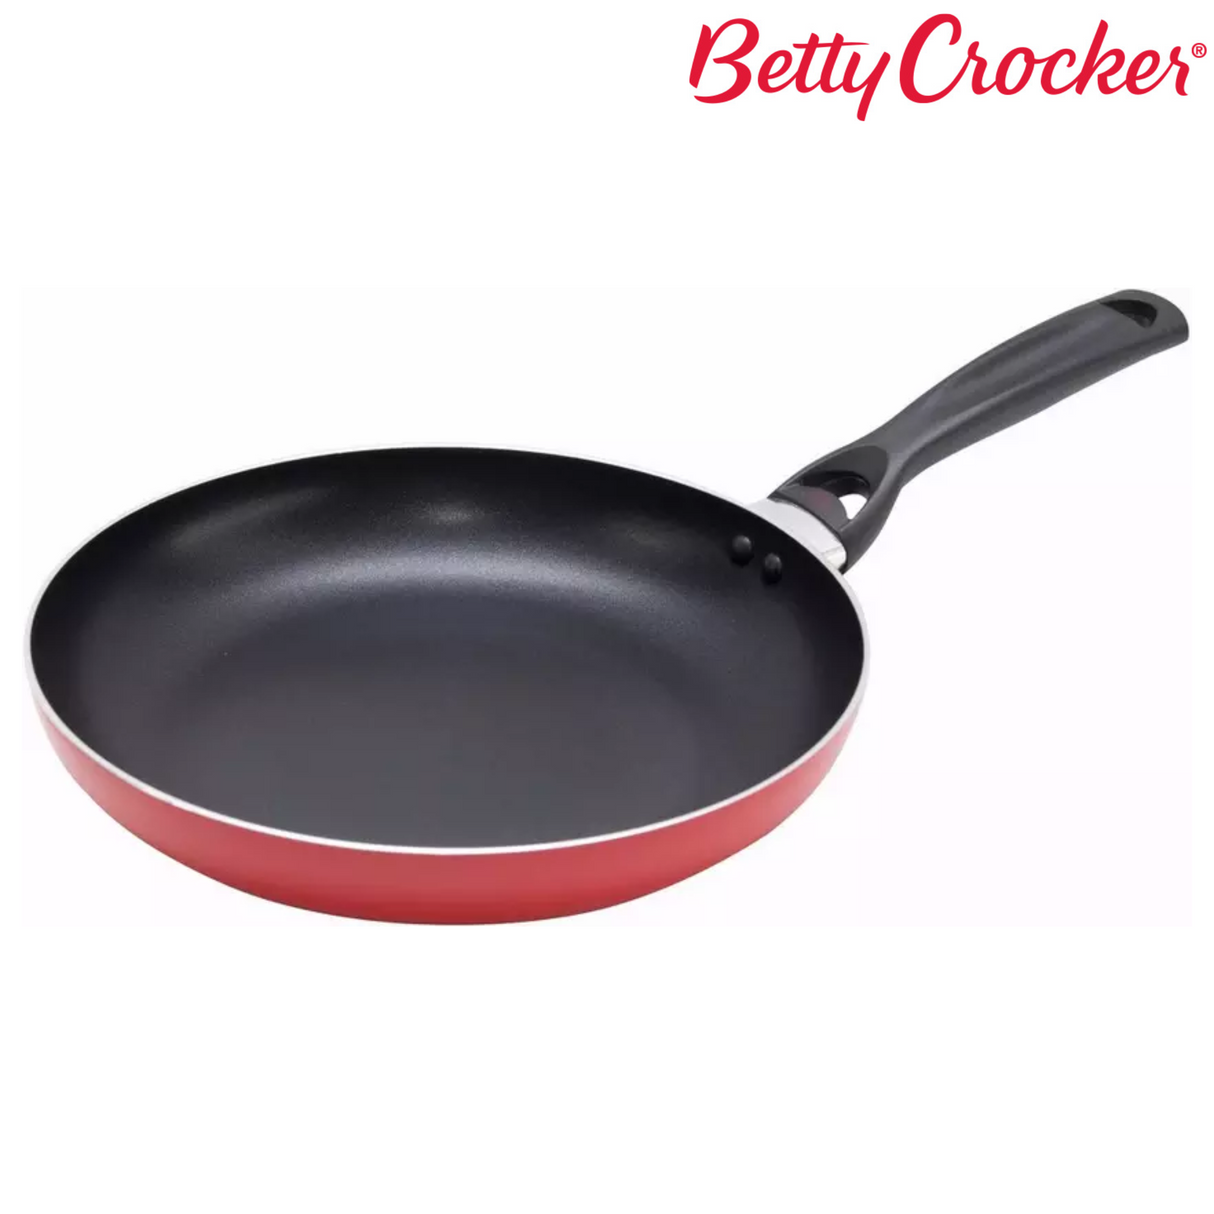 Betty Crocker Cookware Set - 7 pieces